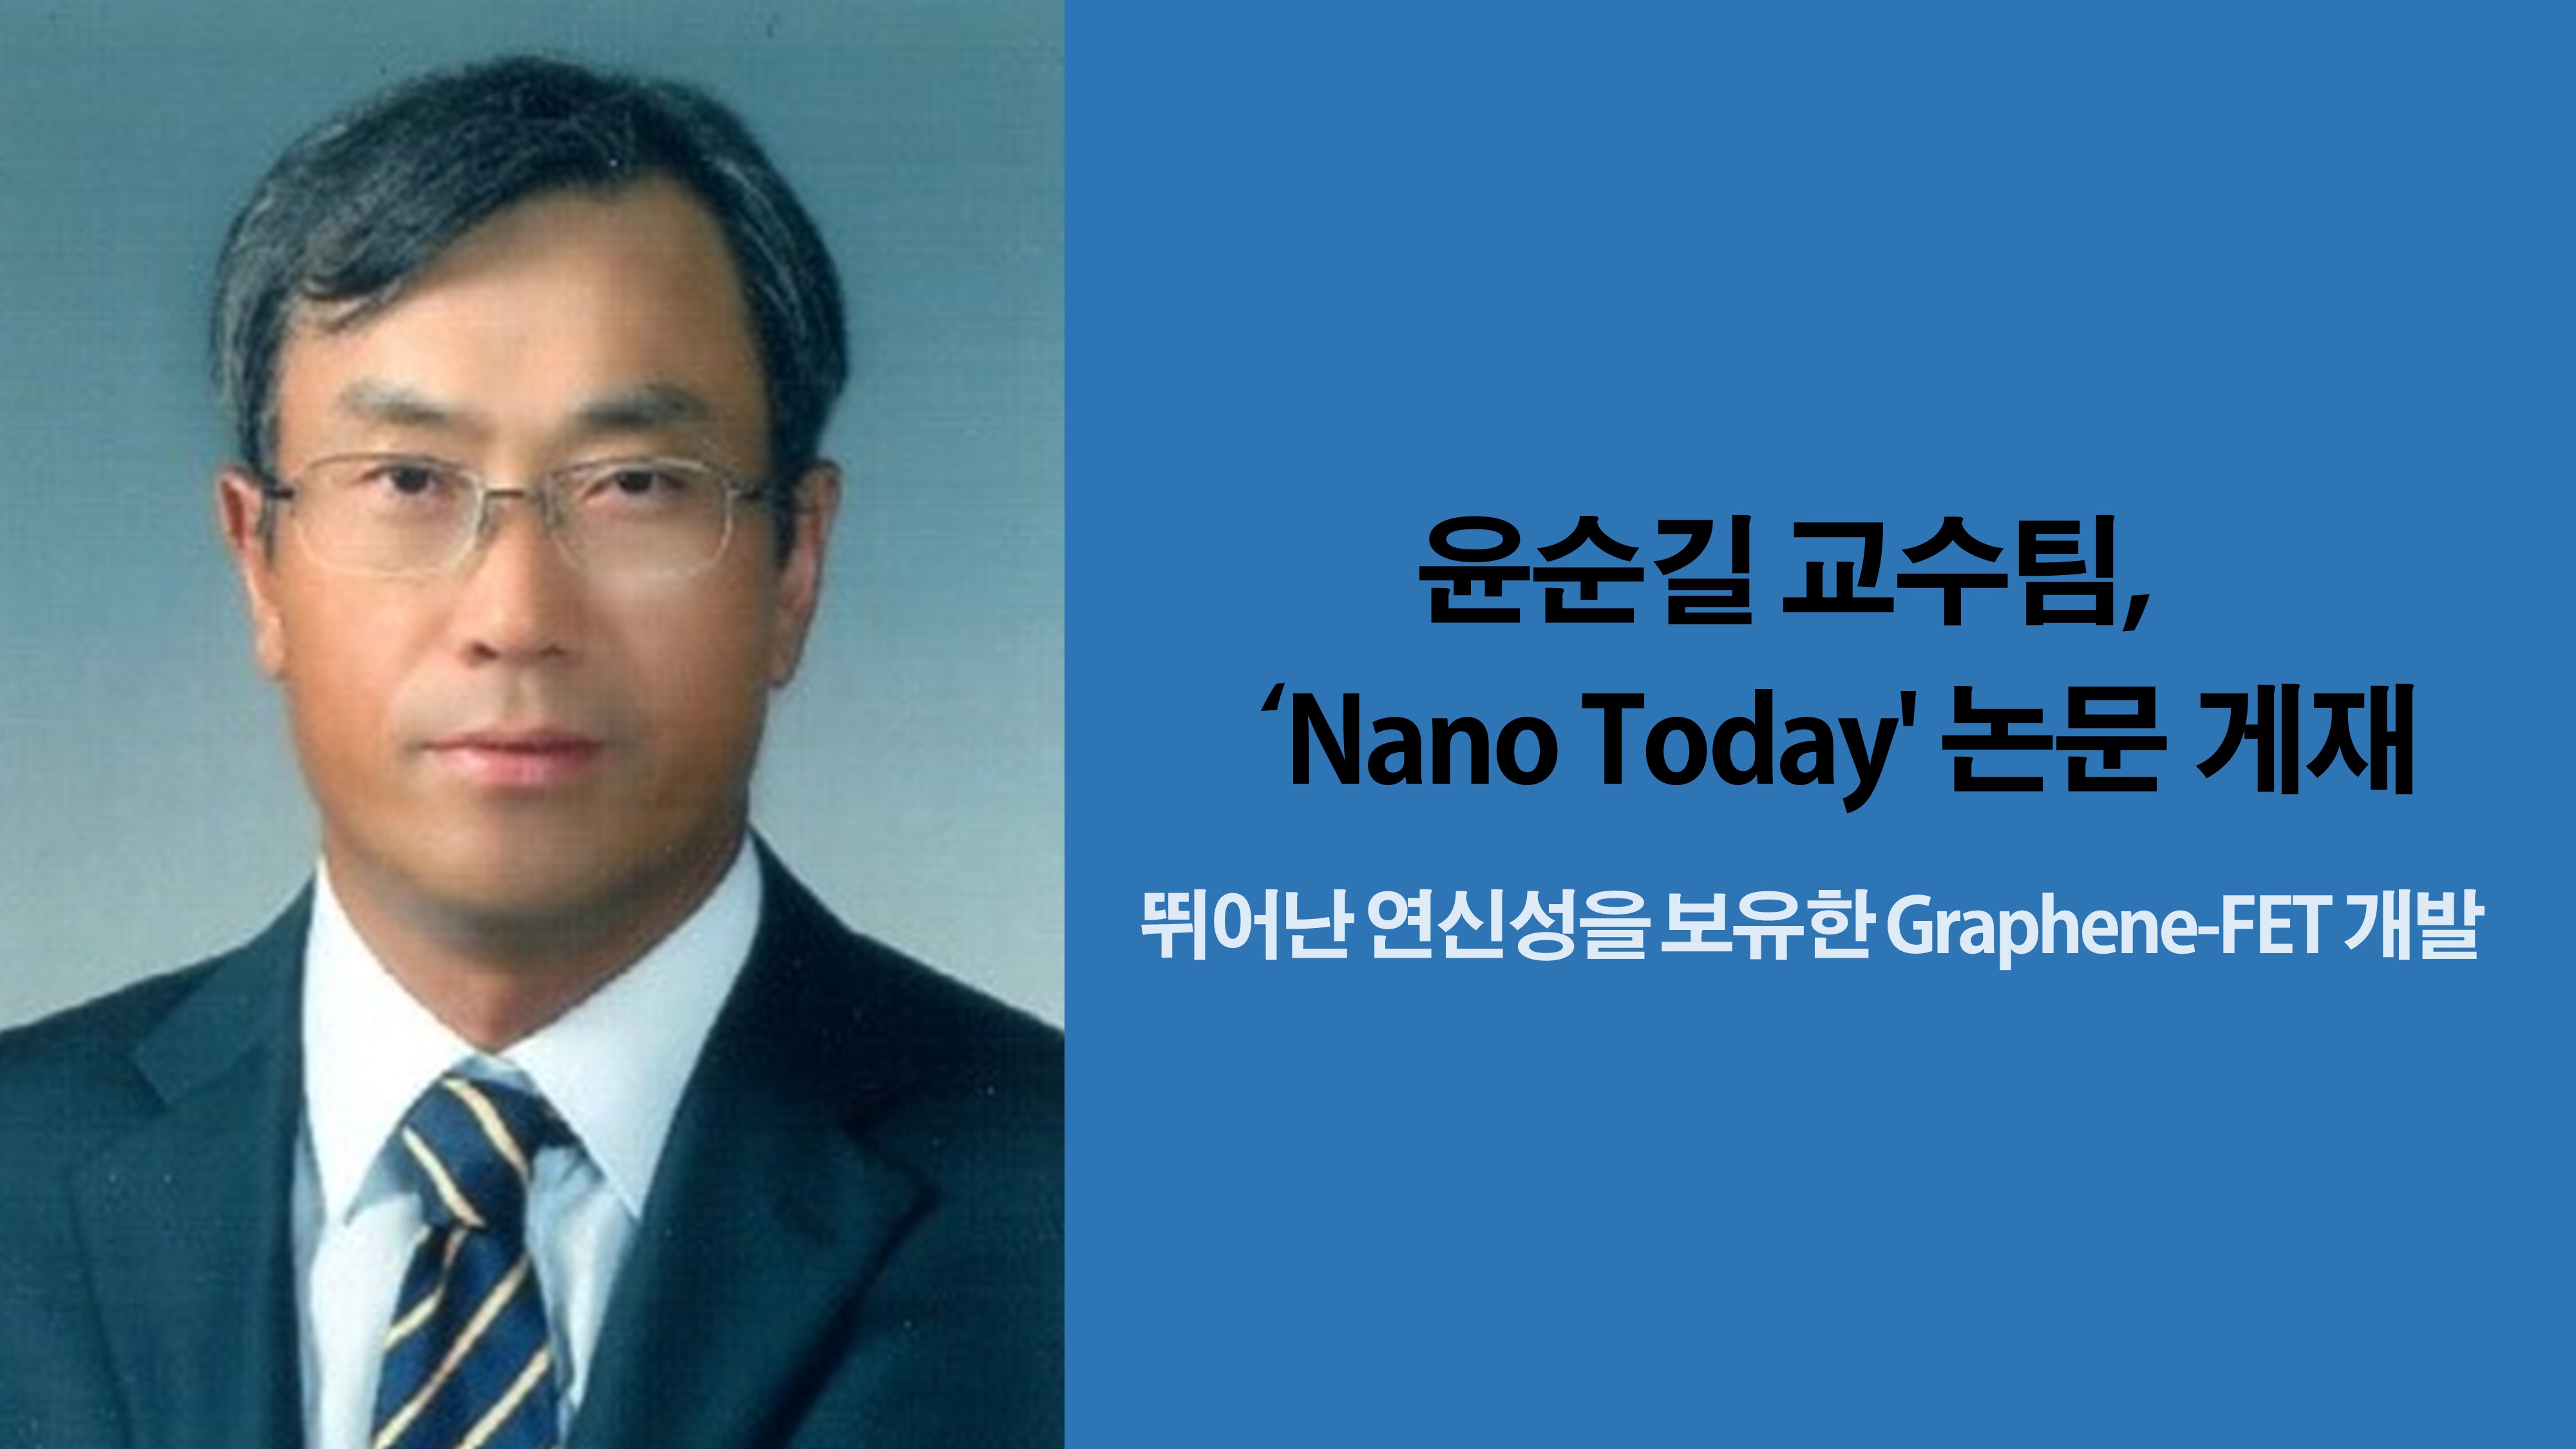 윤순길 교수팀, ‘Nano Today’ 논문 게재 사진1